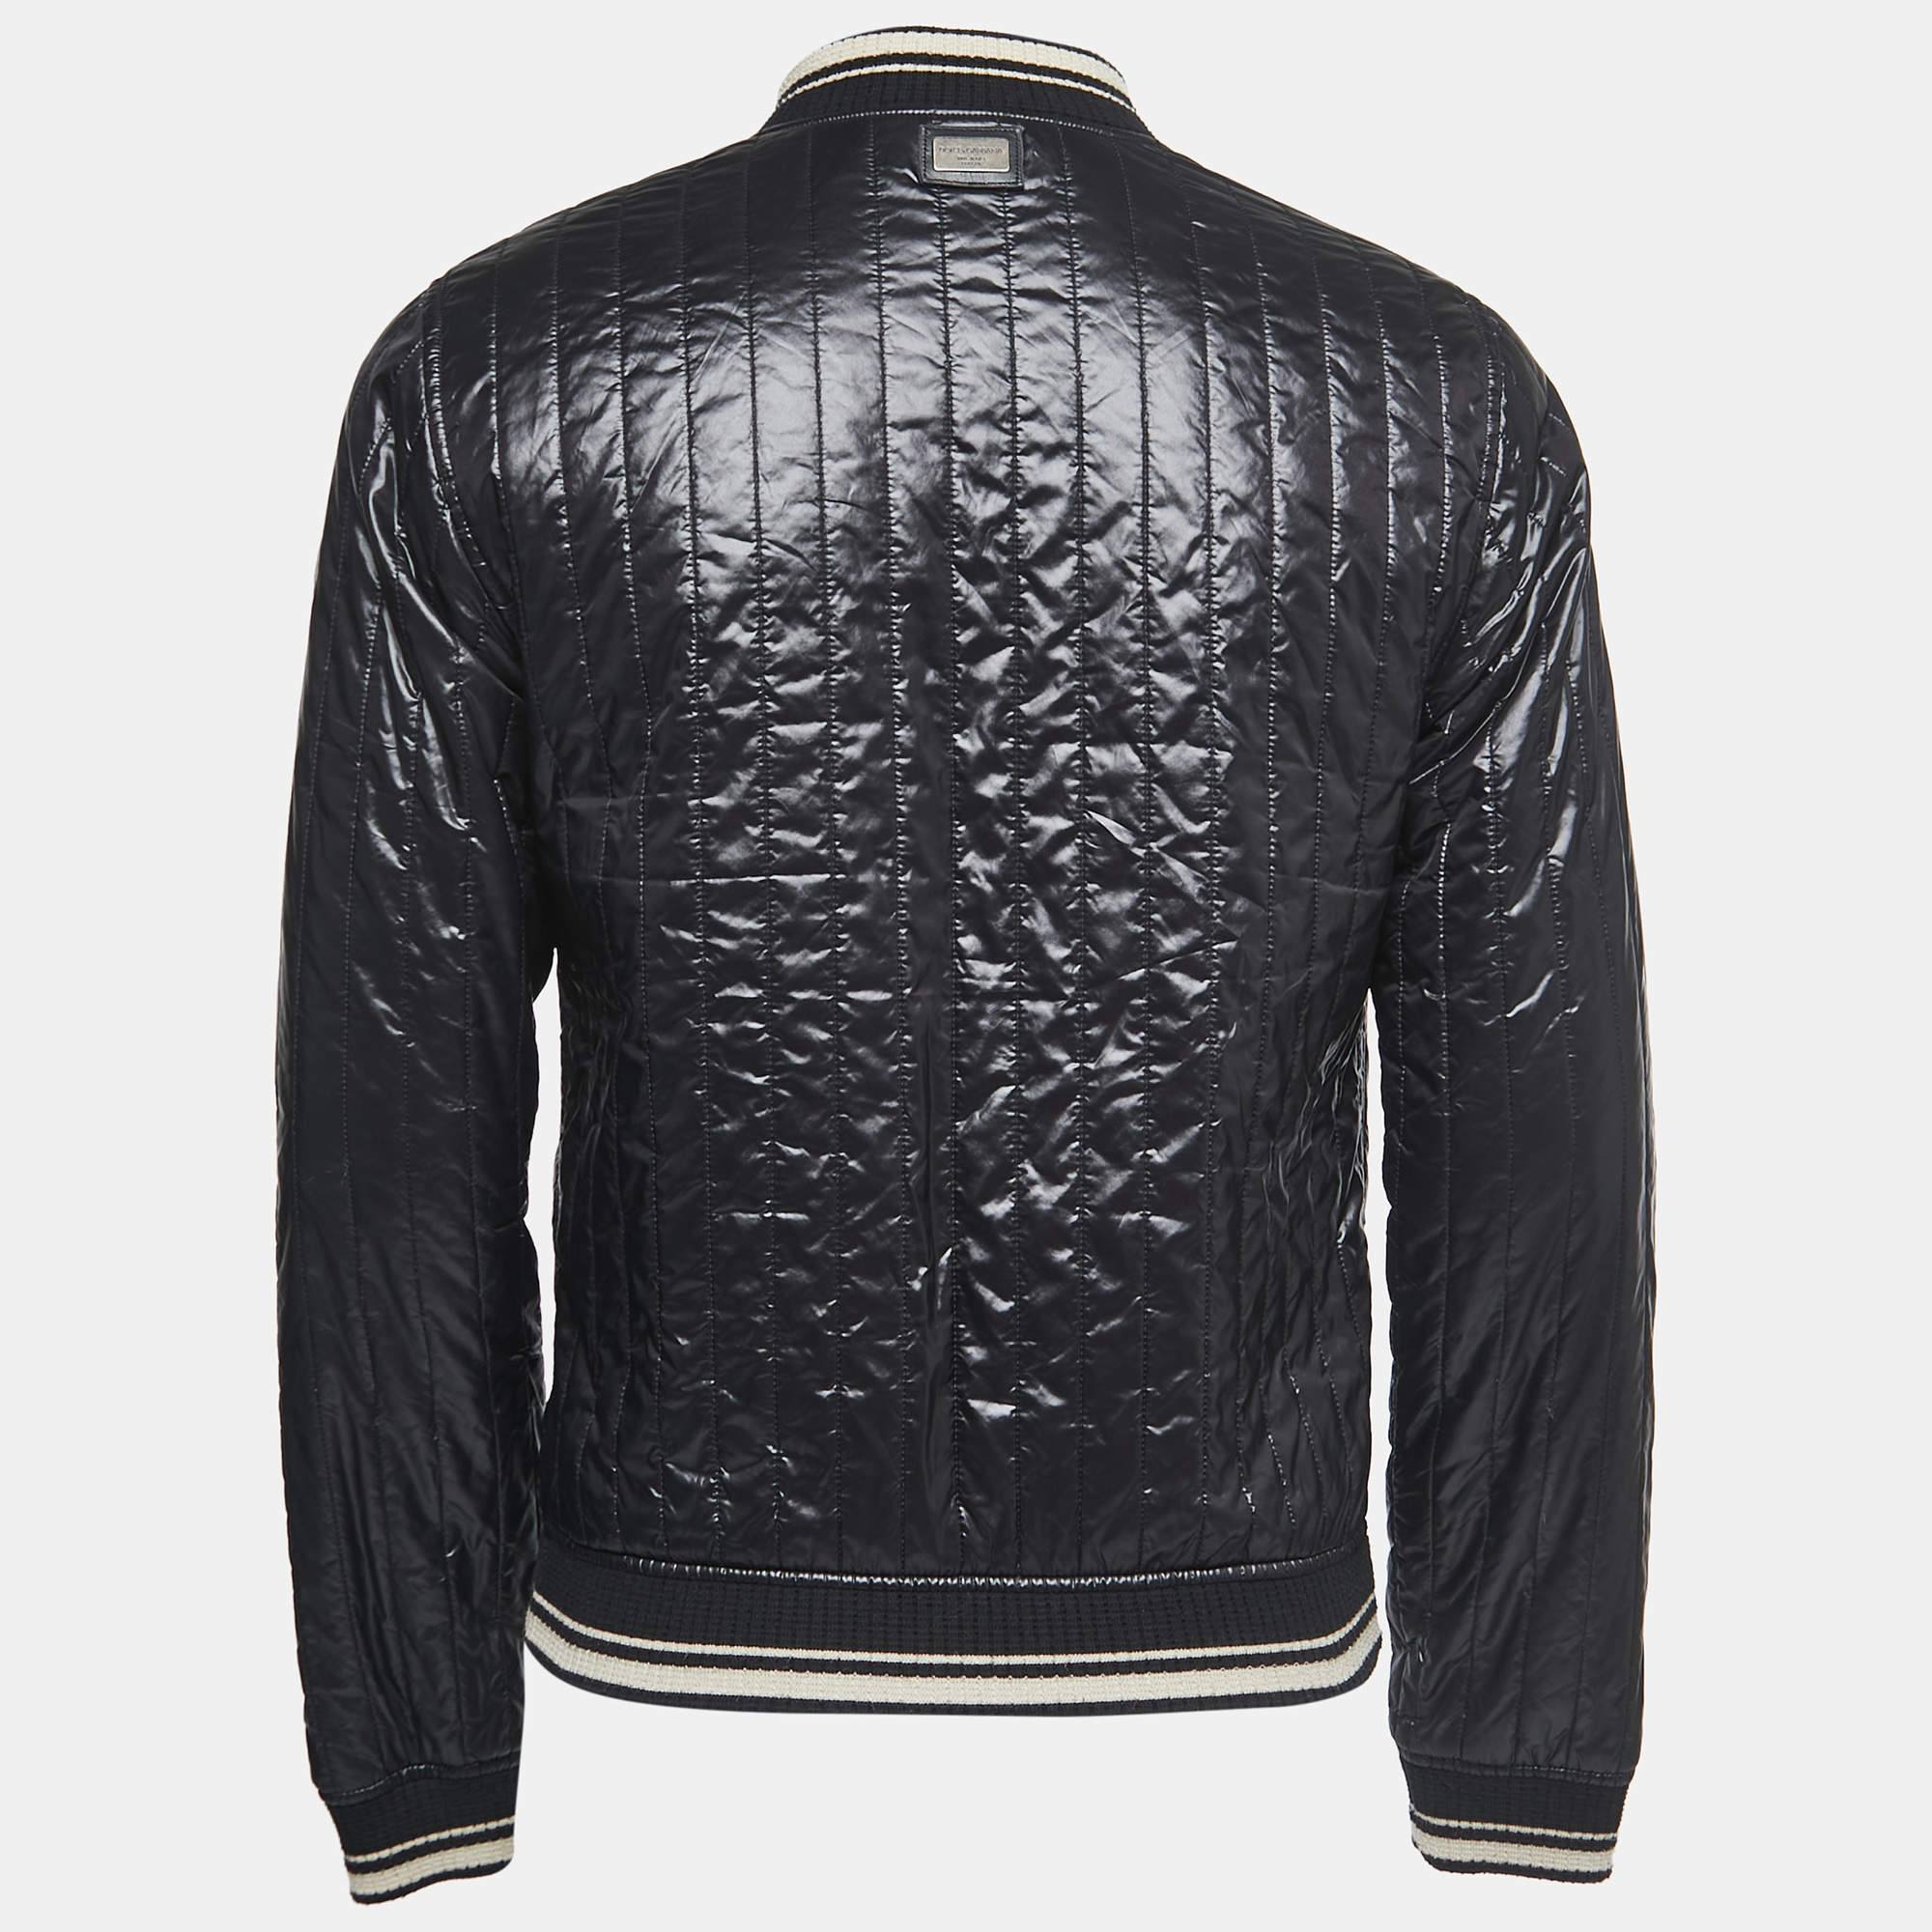 Vintage Crocodile Garments Bomber Men's Luxury Jacket Size Large